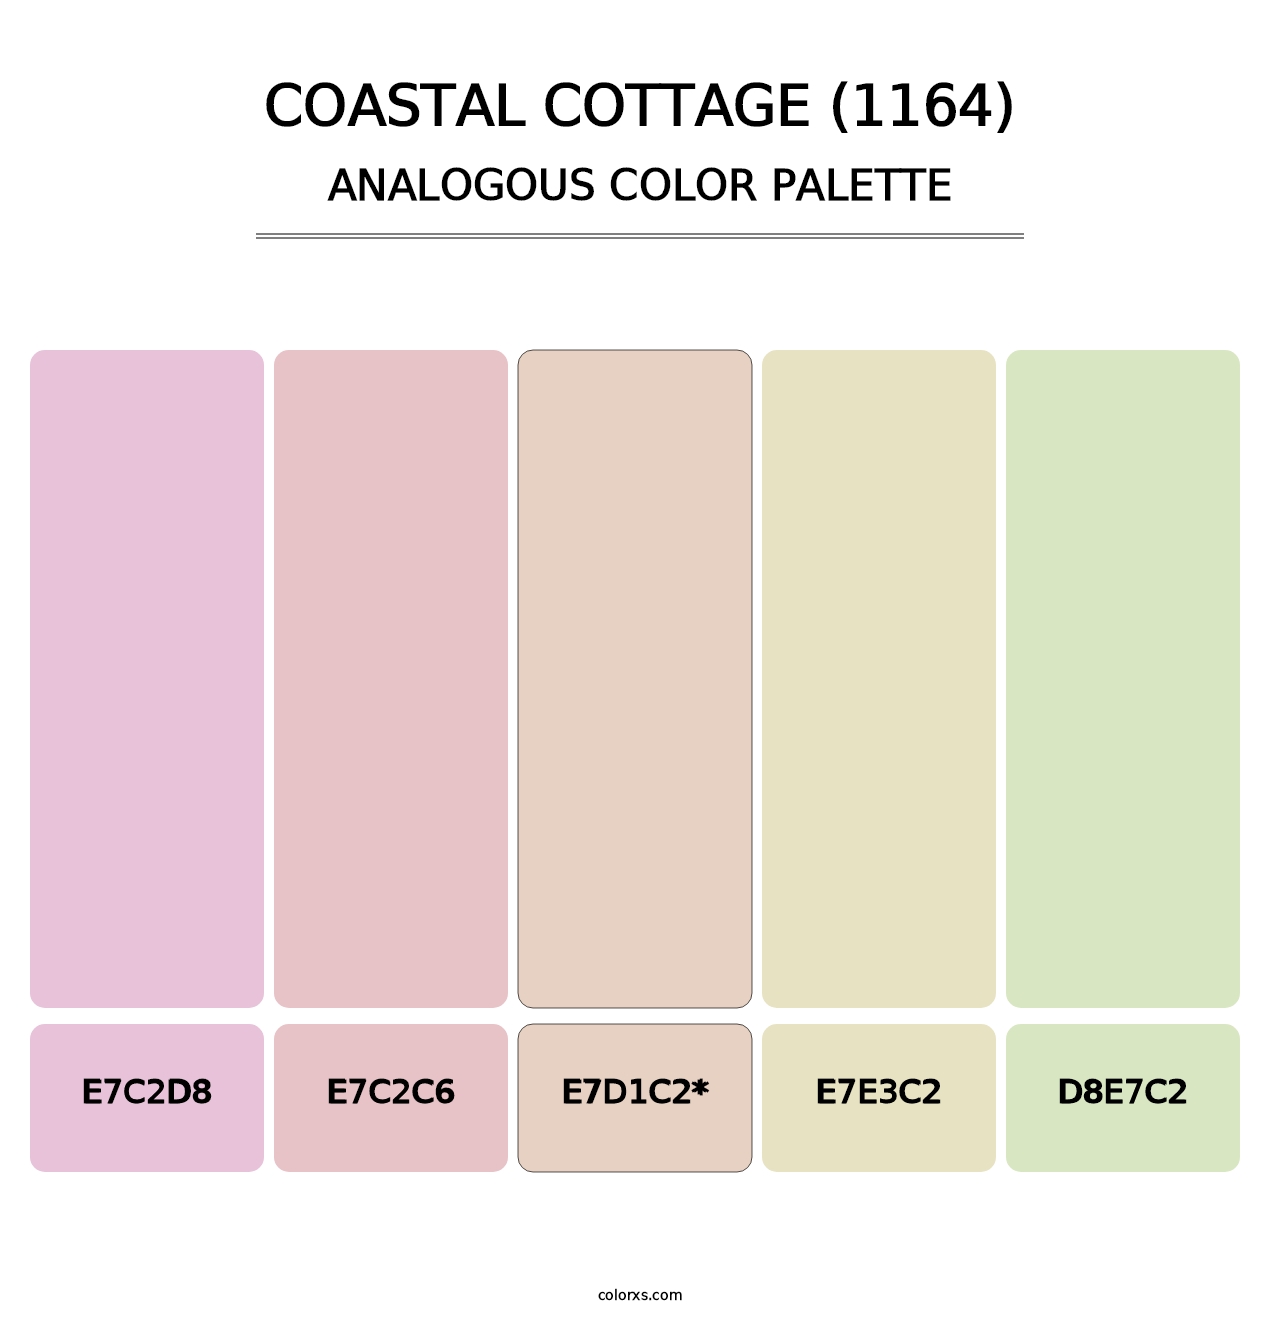 Coastal Cottage (1164) - Analogous Color Palette